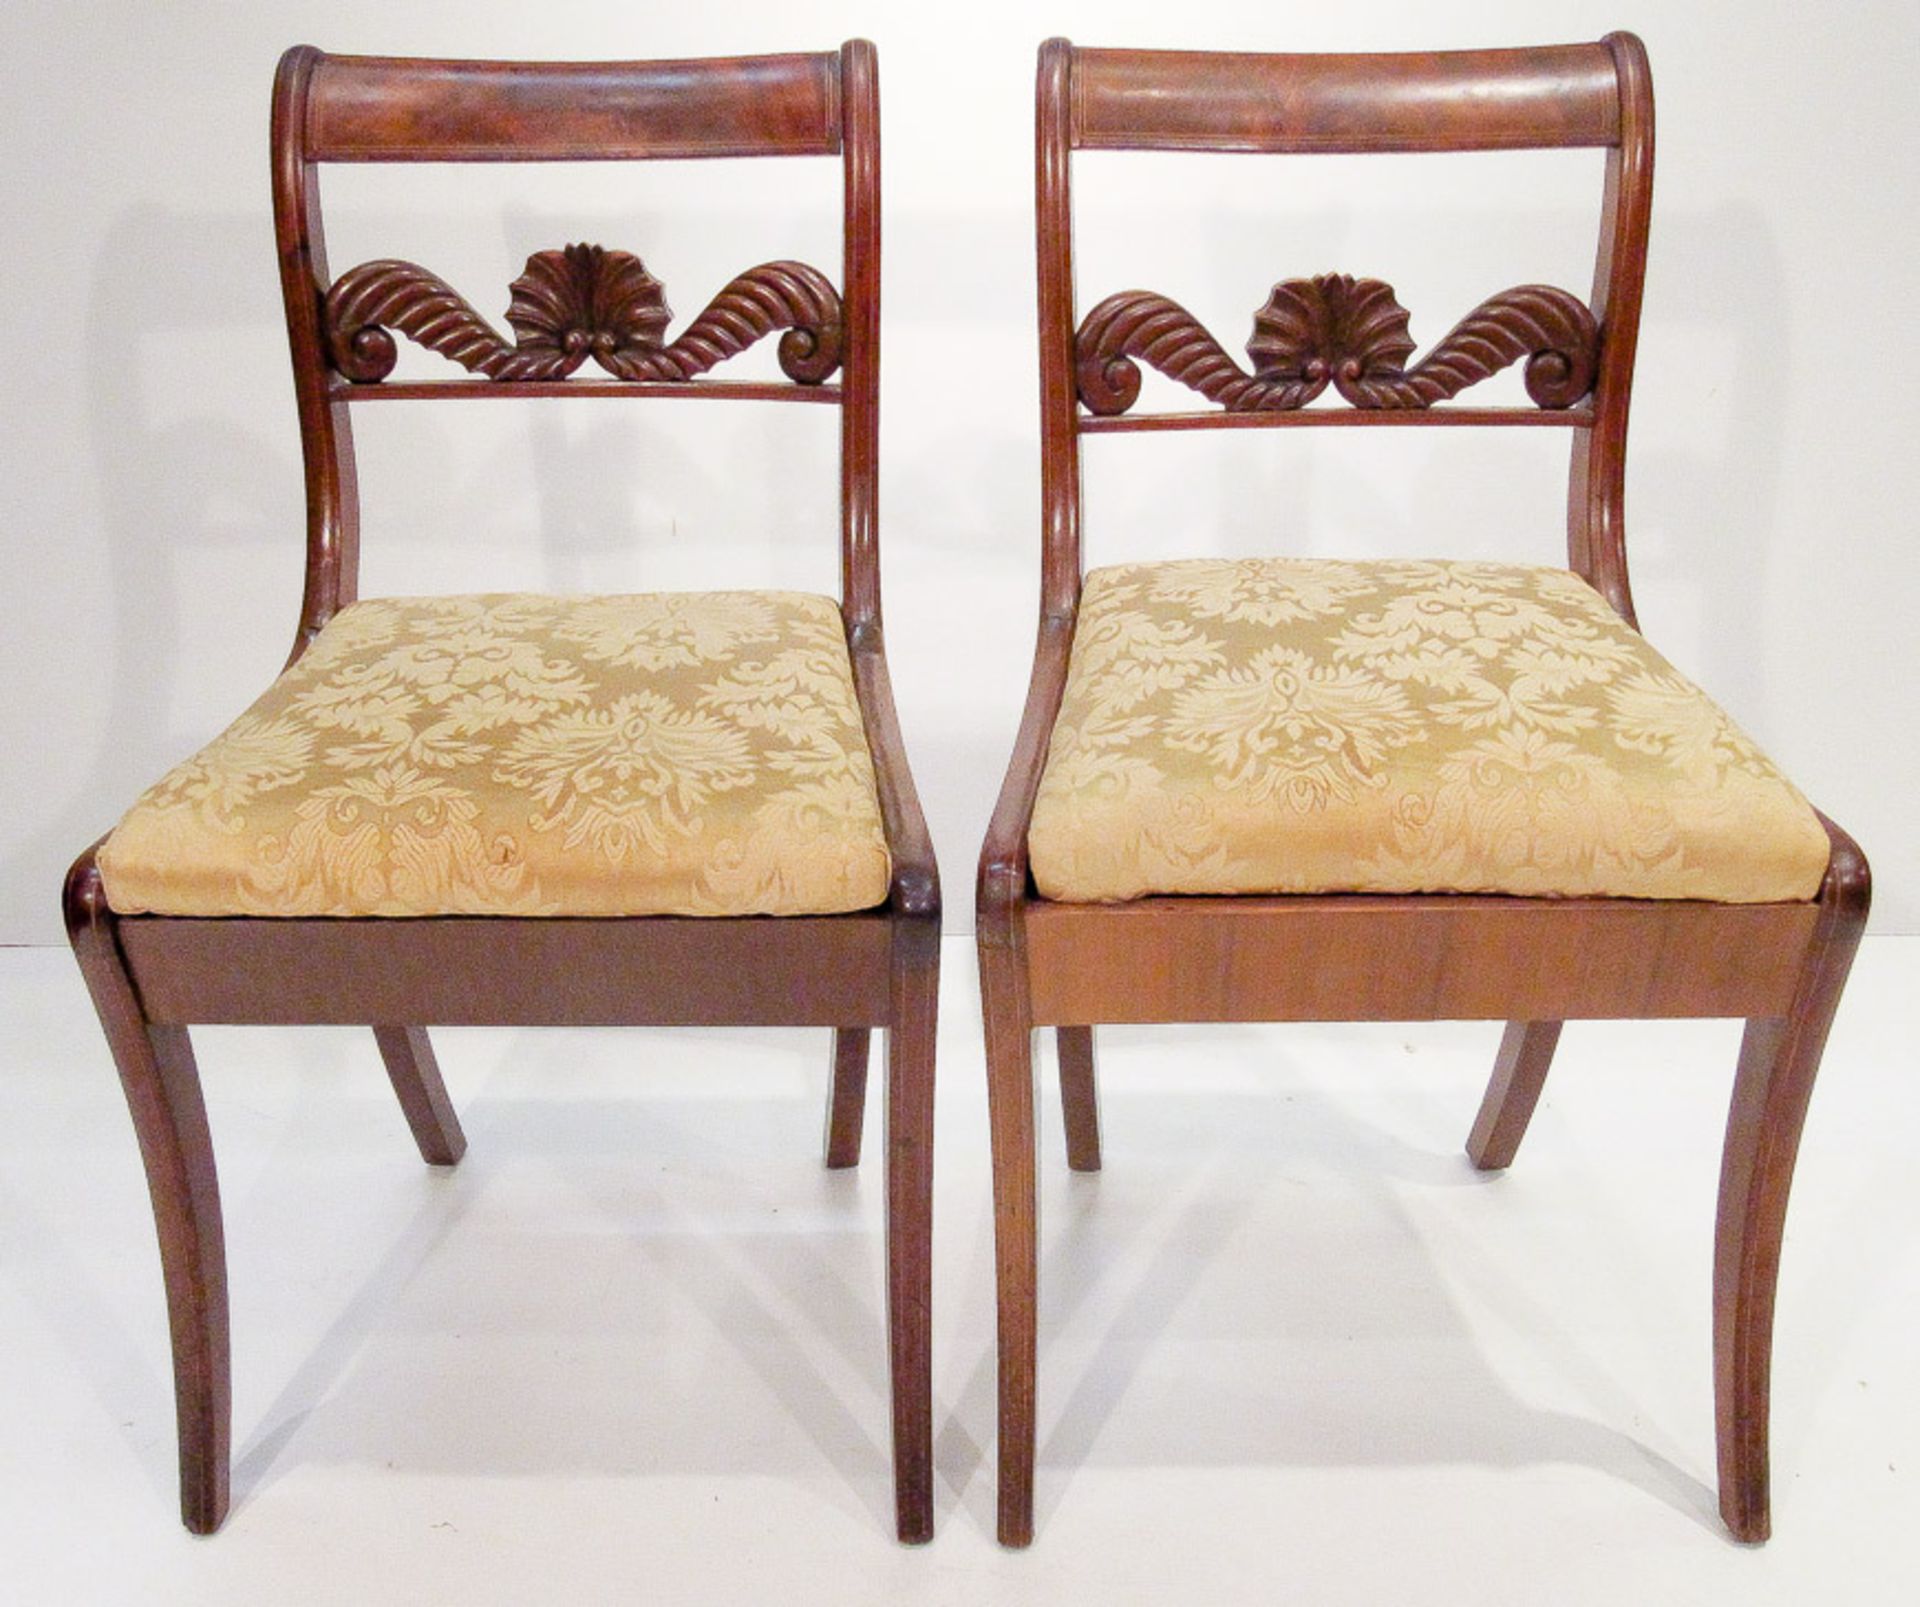 Zwei Biedermeier-StühleNorddeutsch, um 1835Mahagoni mit hellen Fadeneinlagen. Schlichte Gestelle mit